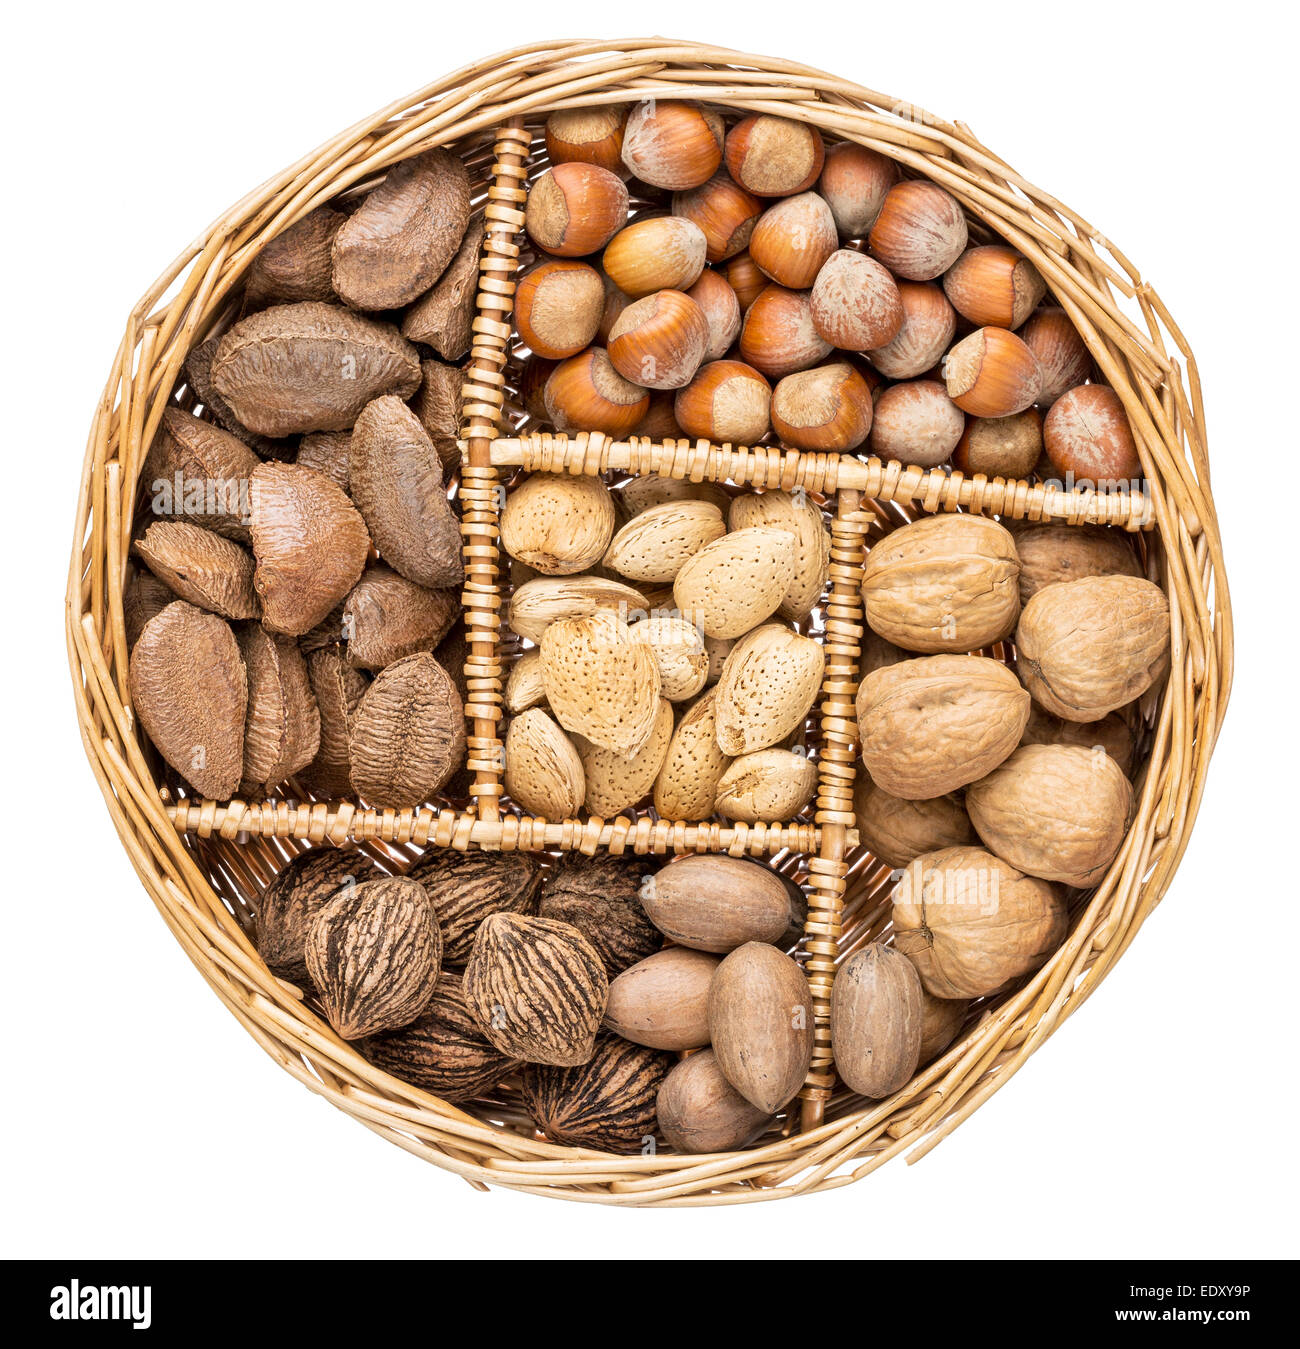 Una variedad de frutos secos (nuez, nuez, avellana, almendra y brasileños)  en una cesta de mimbre aislado en blanco Fotografía de stock - Alamy